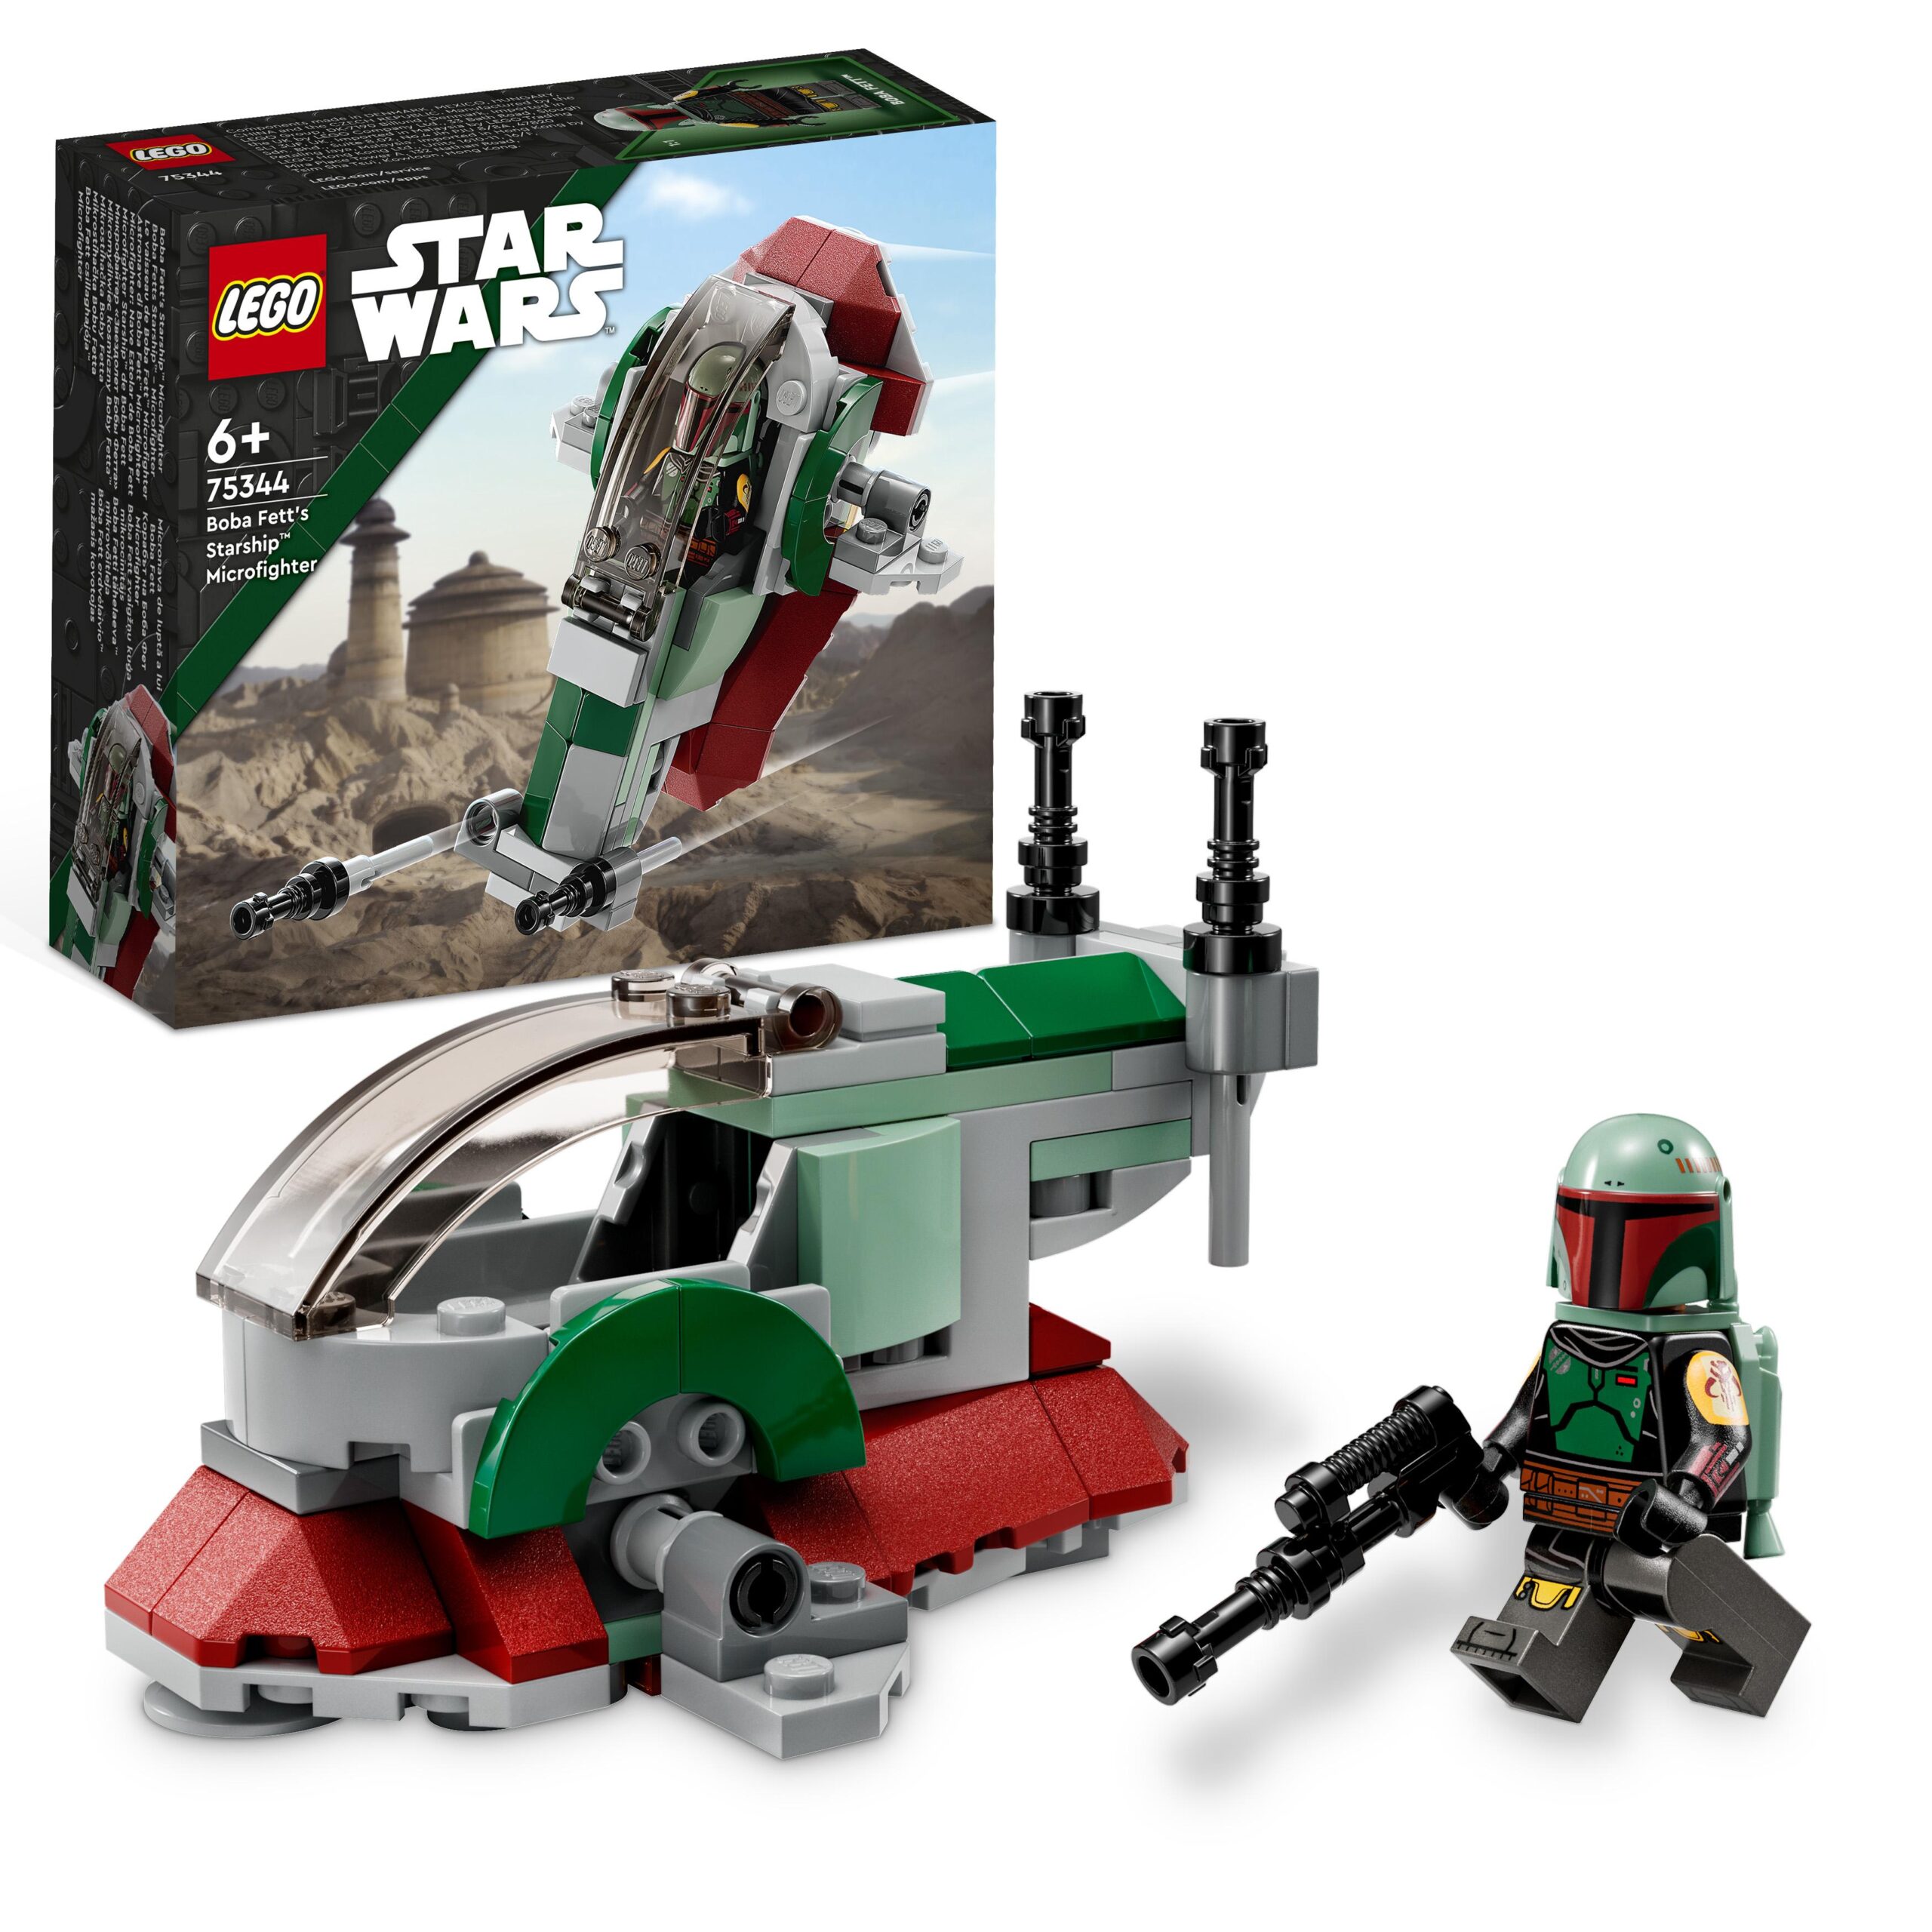 Lego star wars 75344 astronave di boba fett microfighter giocattolo, modellino da costruire set mandaloriano, idee regalo - LEGO® Star Wars™, Star Wars